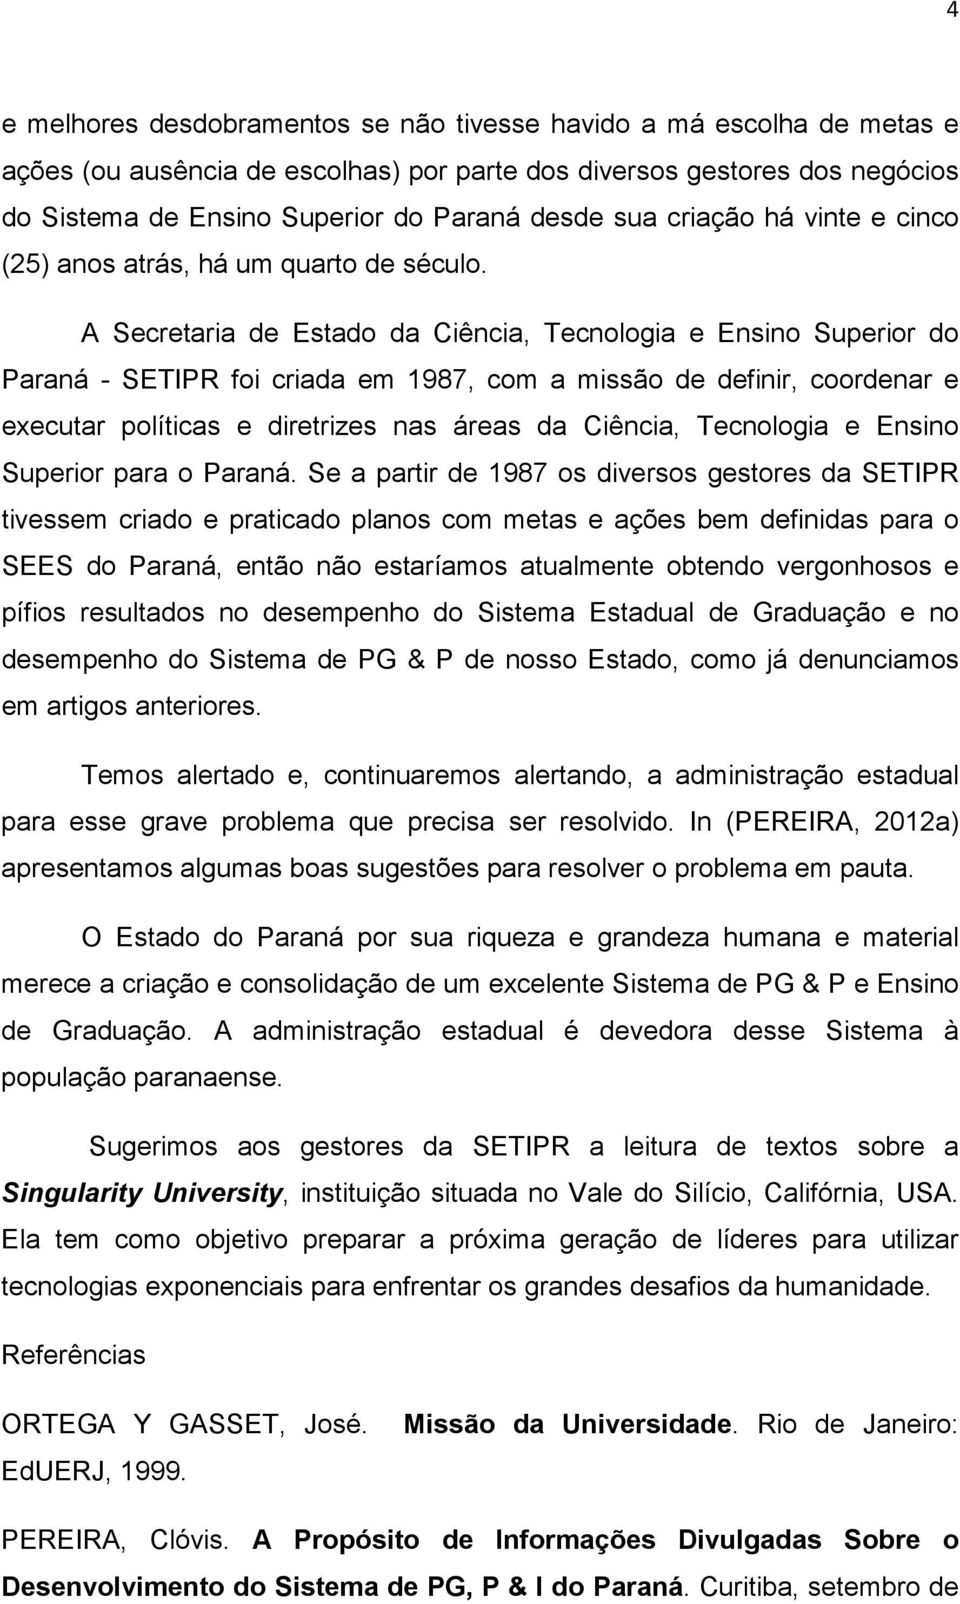 A Secretaria de Estado da Ciência, Tecnologia e Ensino Superior do Paraná - SETIPR foi criada em 1987, com a missão de definir, coordenar e executar políticas e diretrizes nas áreas da Ciência,